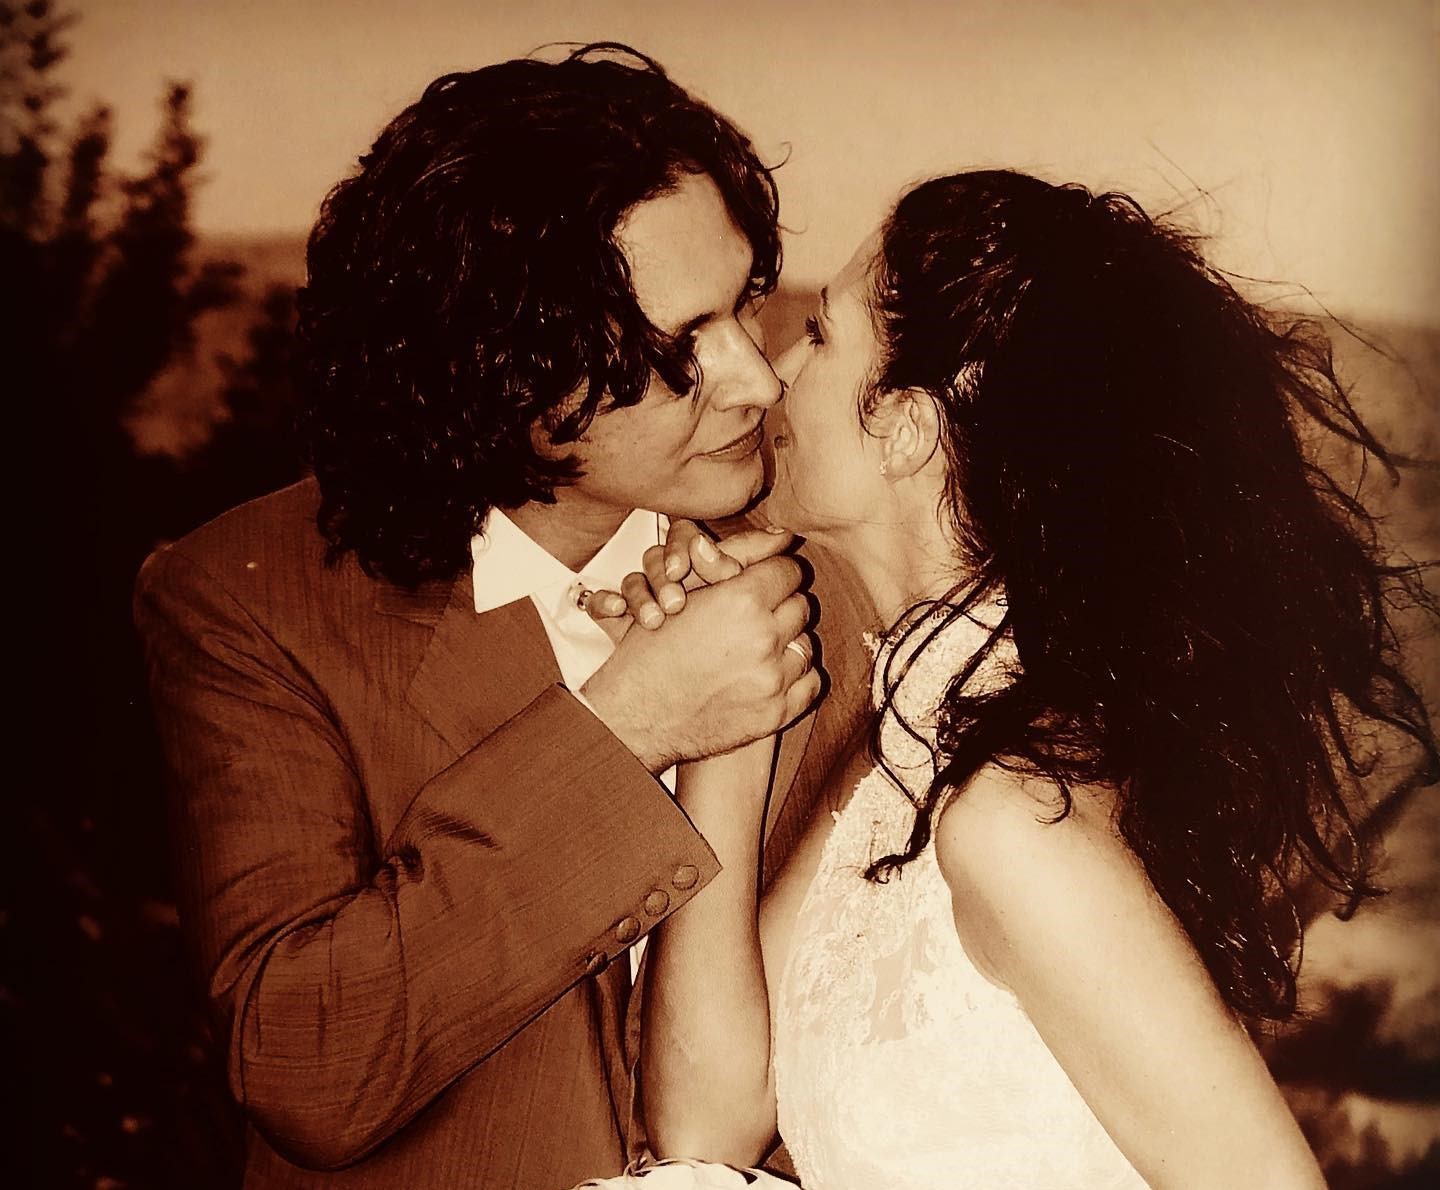 Αθηνά Μαξίμου: Οι σπάνιες φωτογραφίες με τον Αιμίλιο Χειλάκη ανήμερα της επετείου του γάμου τους – «Συνοδοιπόροι στο ταξίδι της ζωής! Συγκάτοικοι στην αγάπη μας!»